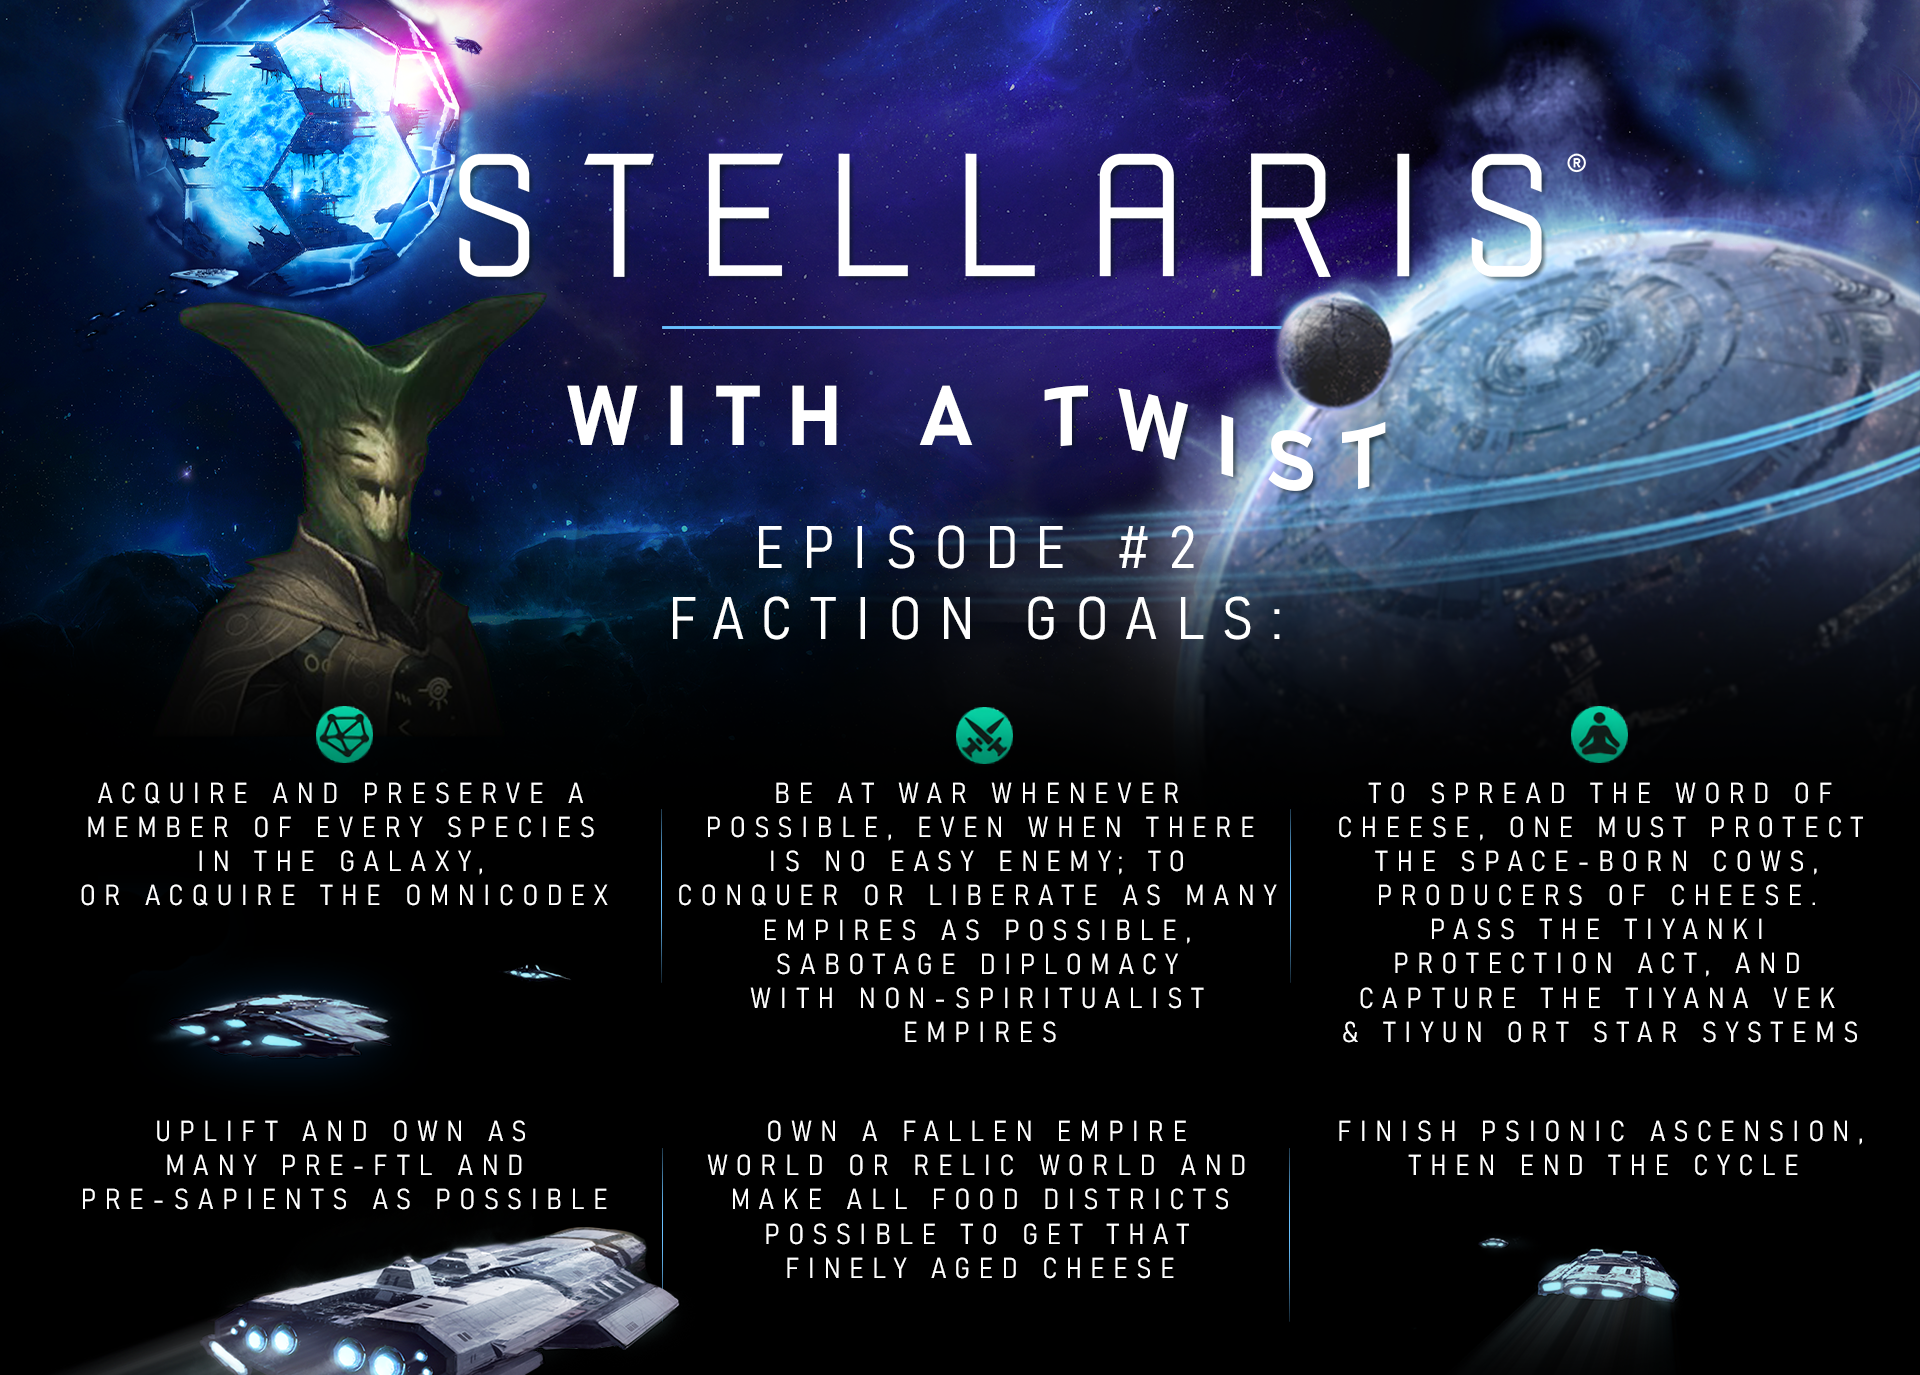 Galaxy Settings in Stellaris 3.3, Beginner's Guide Pt.2 